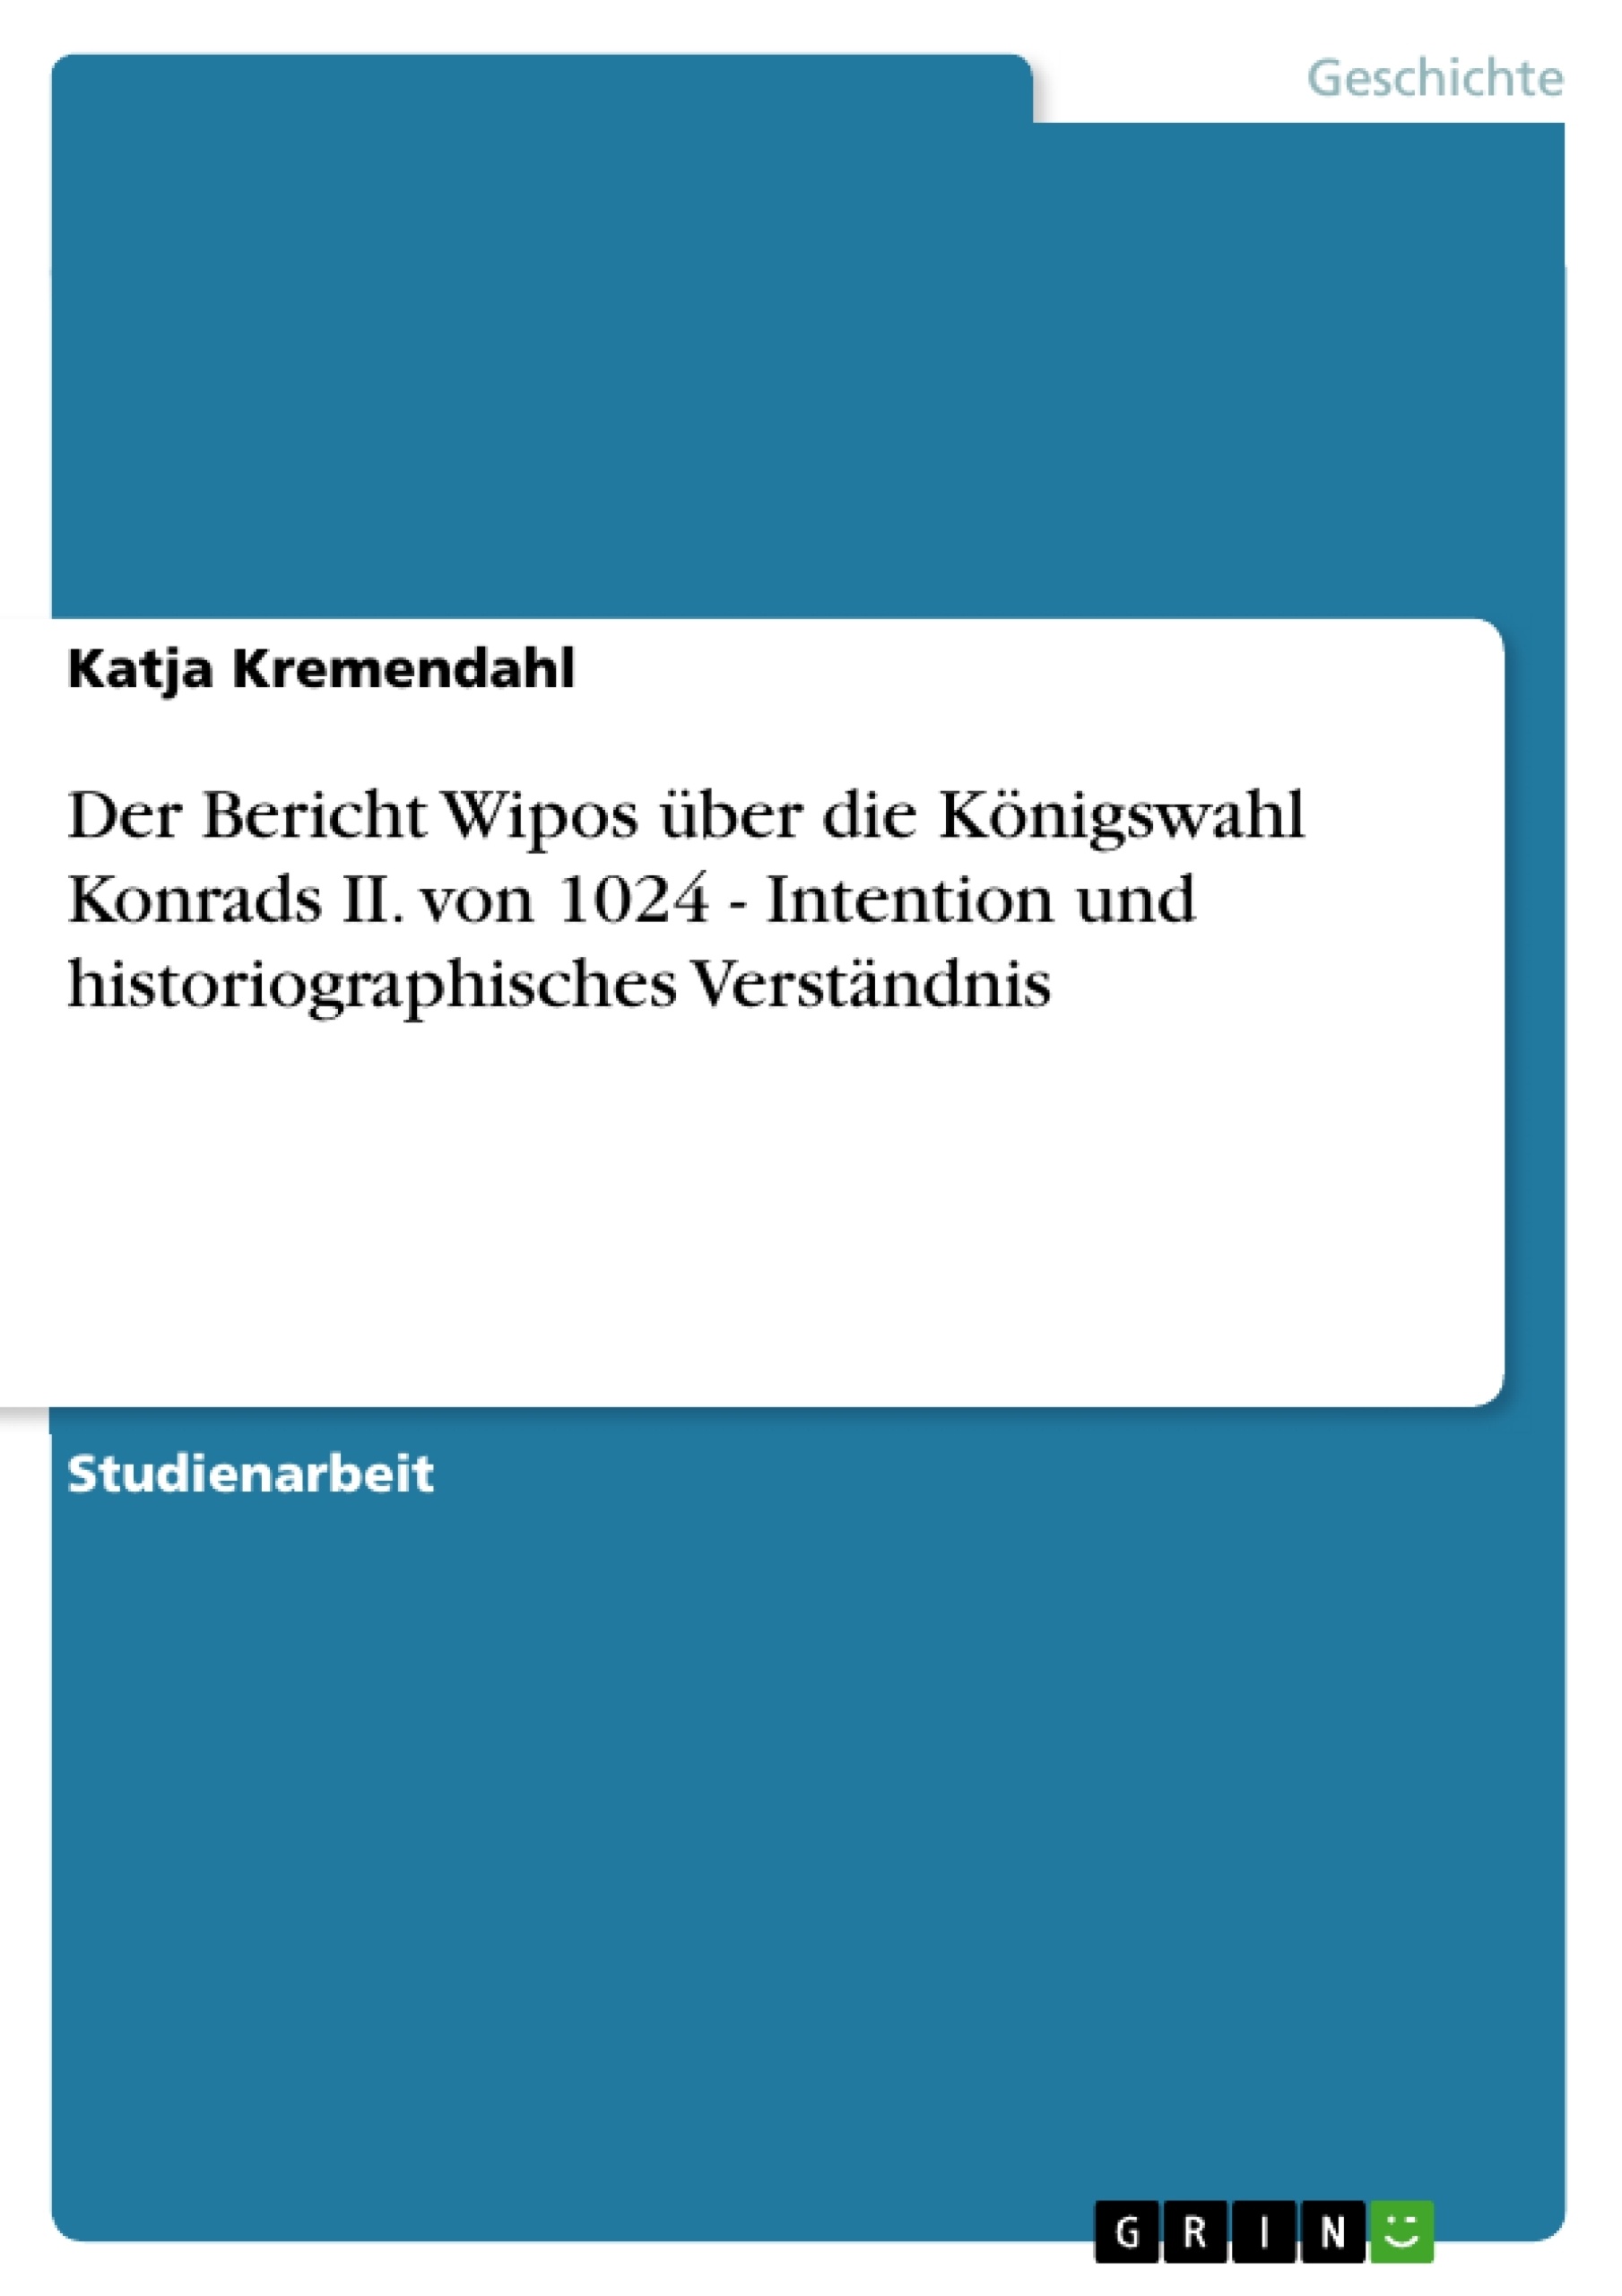 Título: Der Bericht Wipos über die Königswahl Konrads II. von 1024 - Intention und historiographisches Verständnis